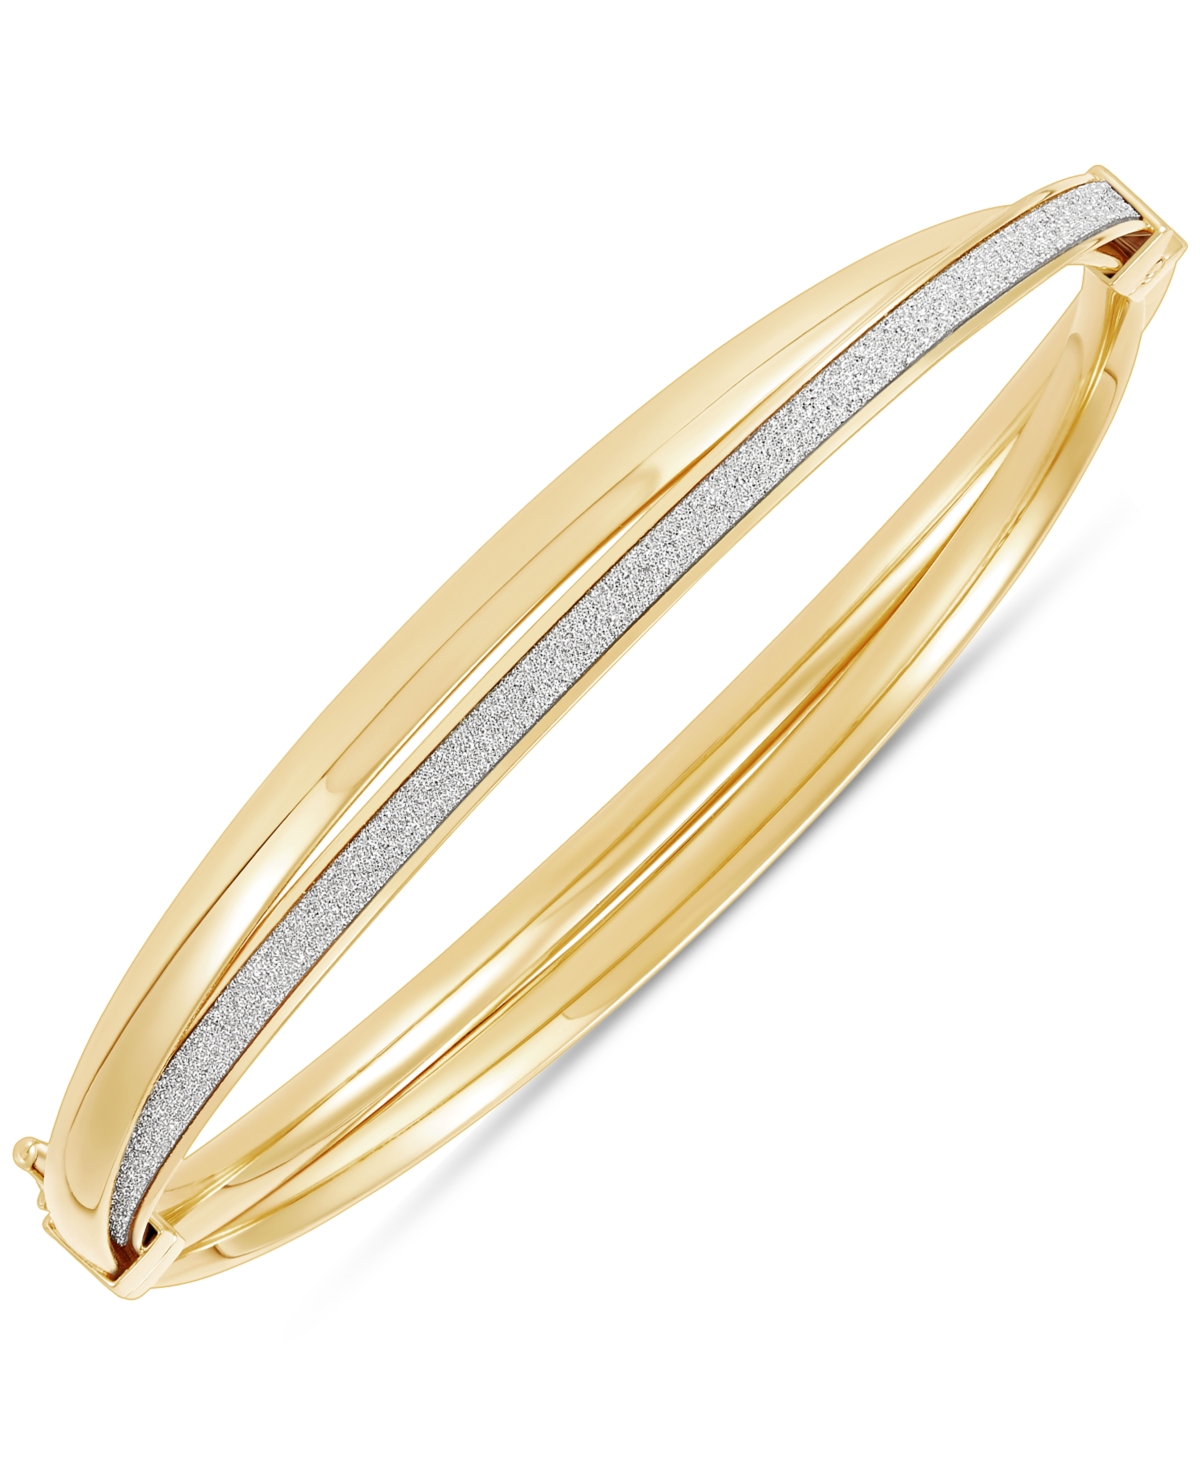 Italian Gold Glitter Crossover Bangle Bracelet In 10k Gold